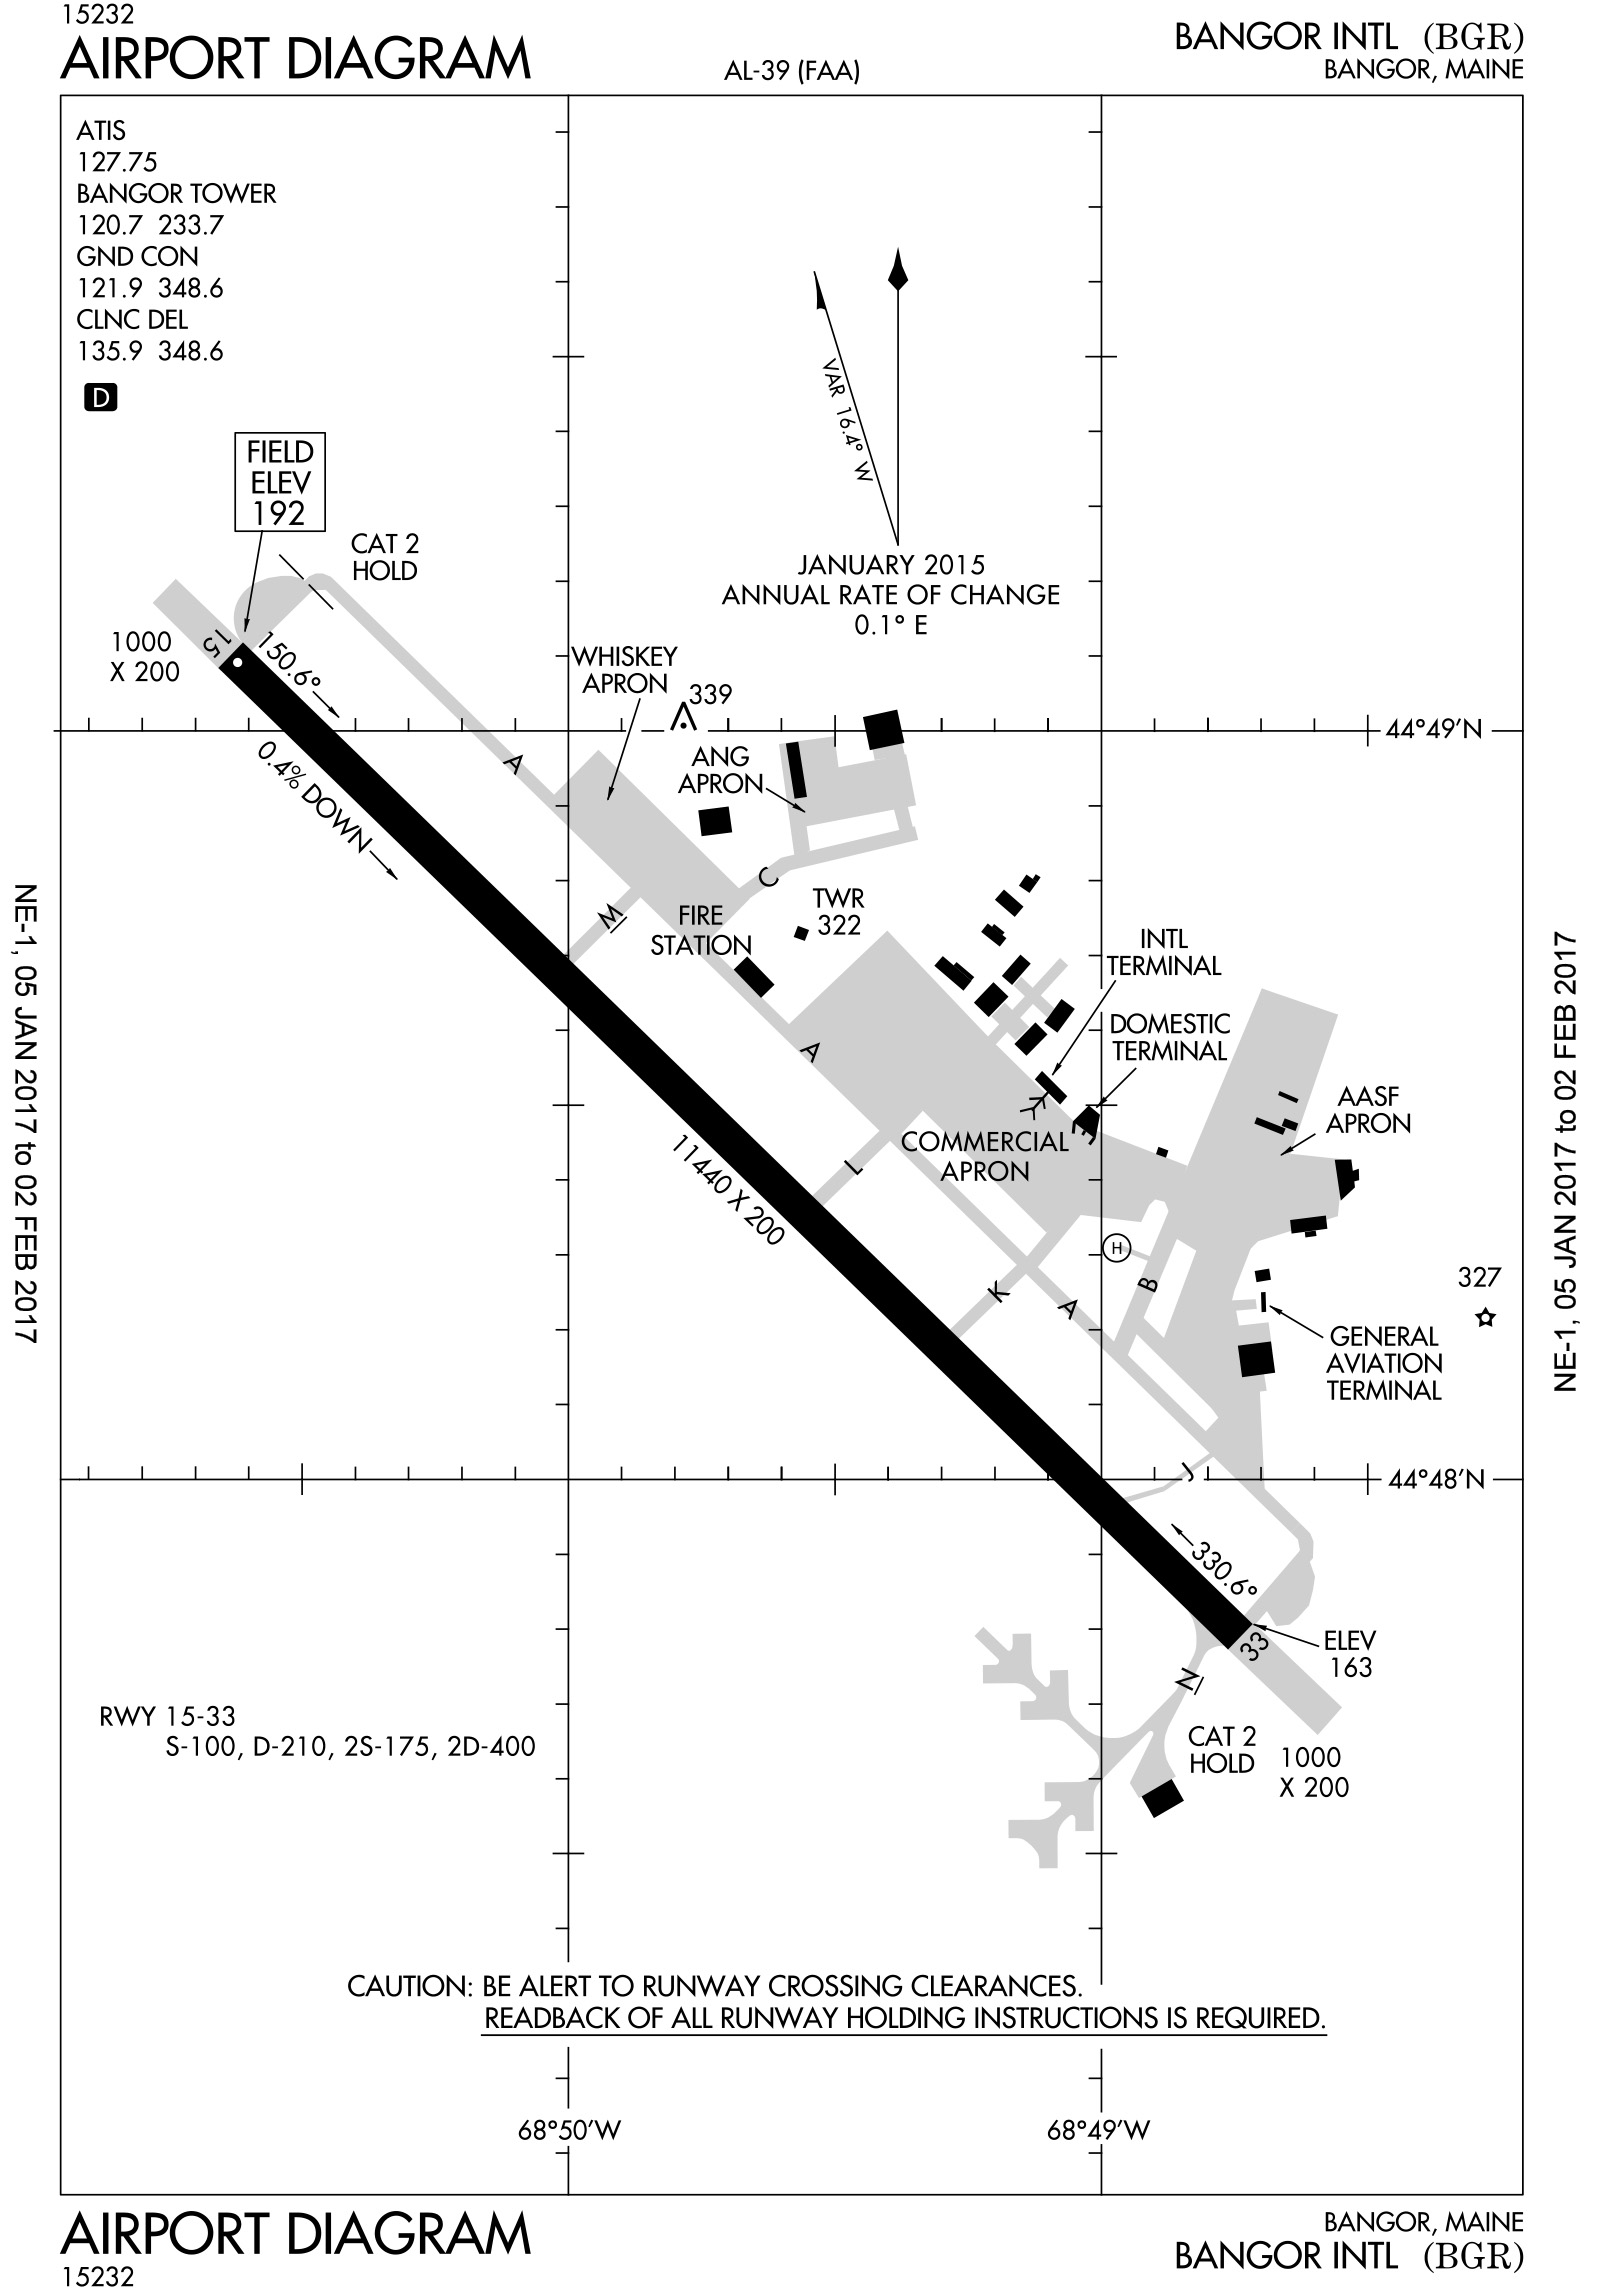 Bangor International airport diagram.